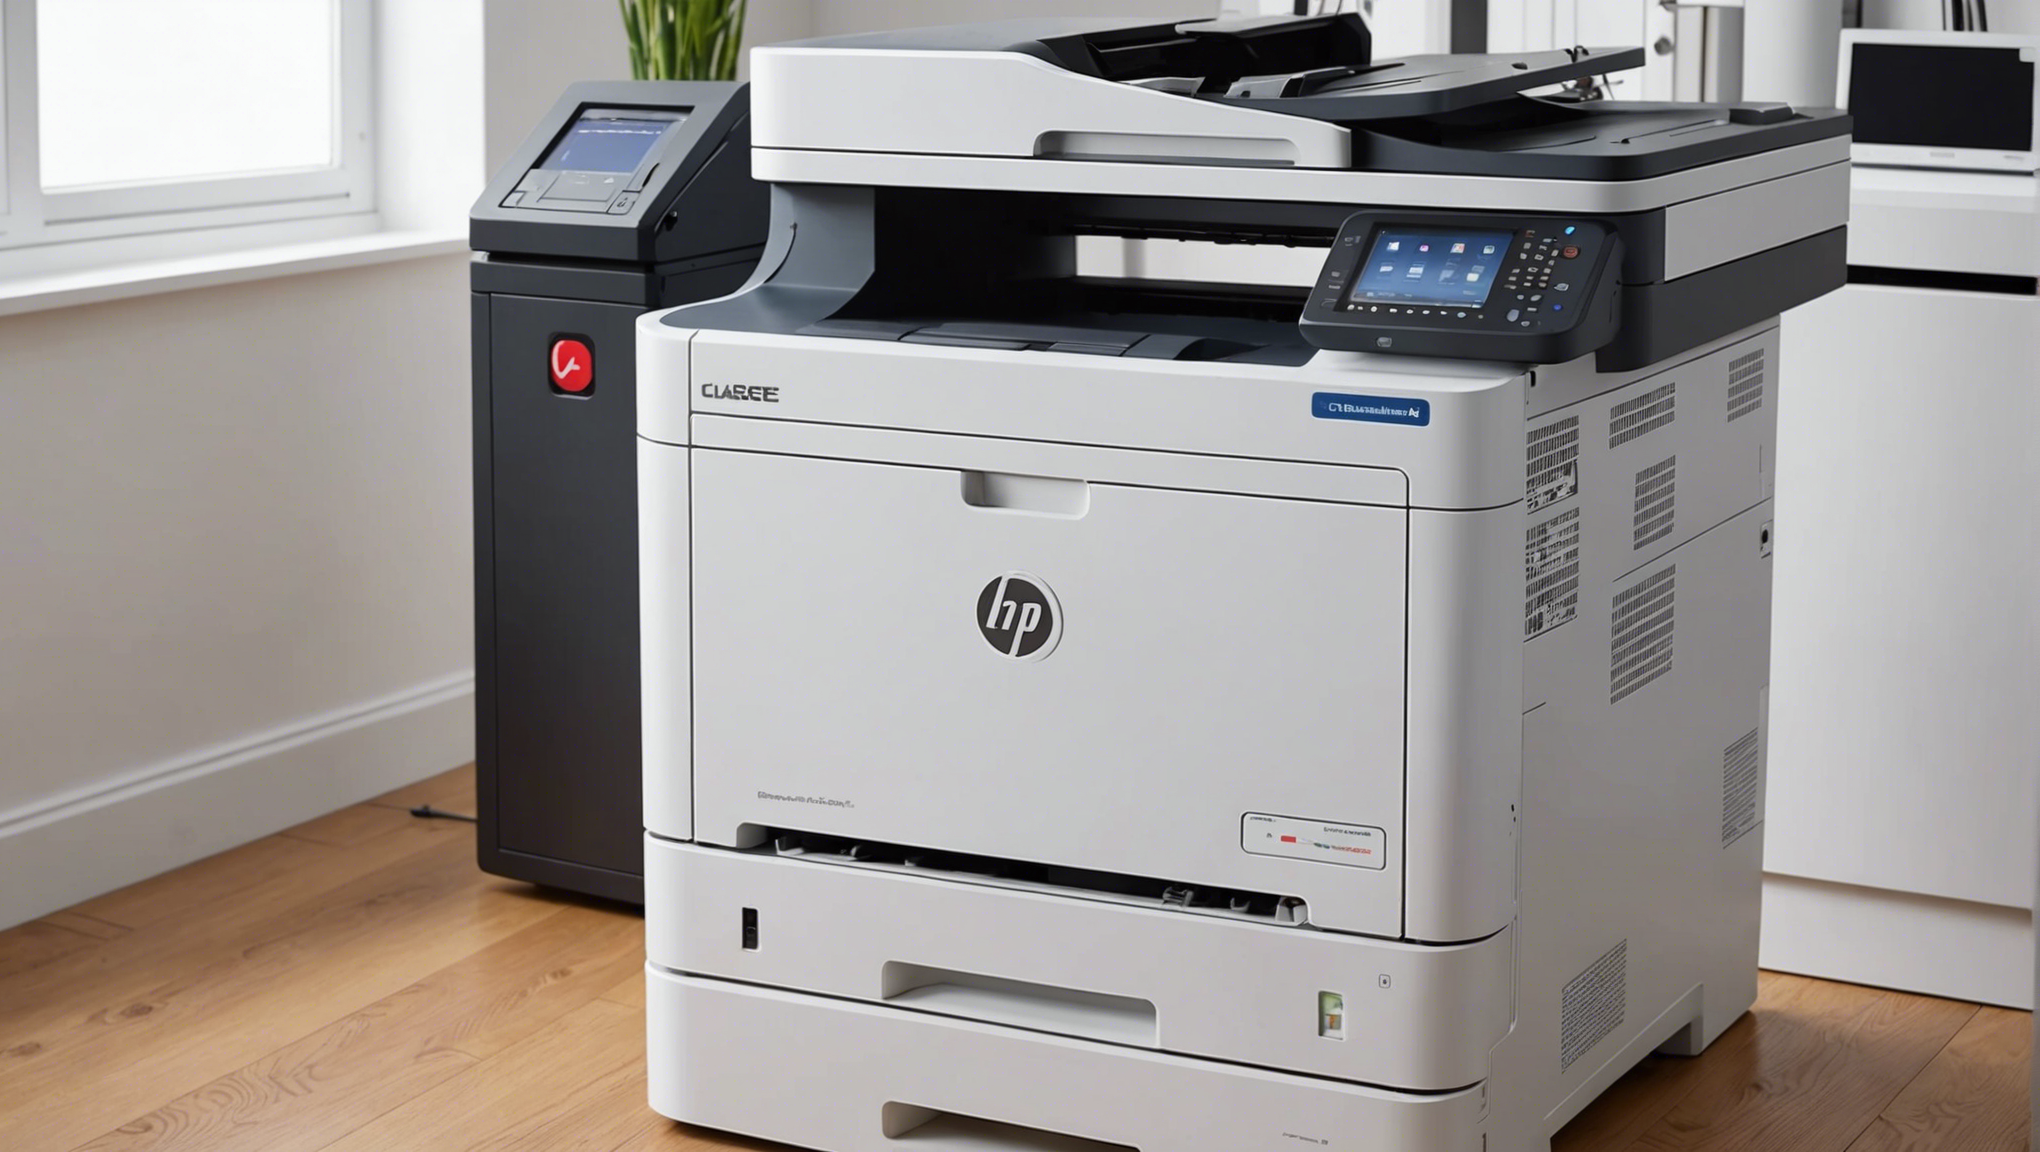 découvrez des imprimantes professionnelles à prix abordables offrant un rendement élevé et un faible coût par page pour vos besoins d'impression laser.